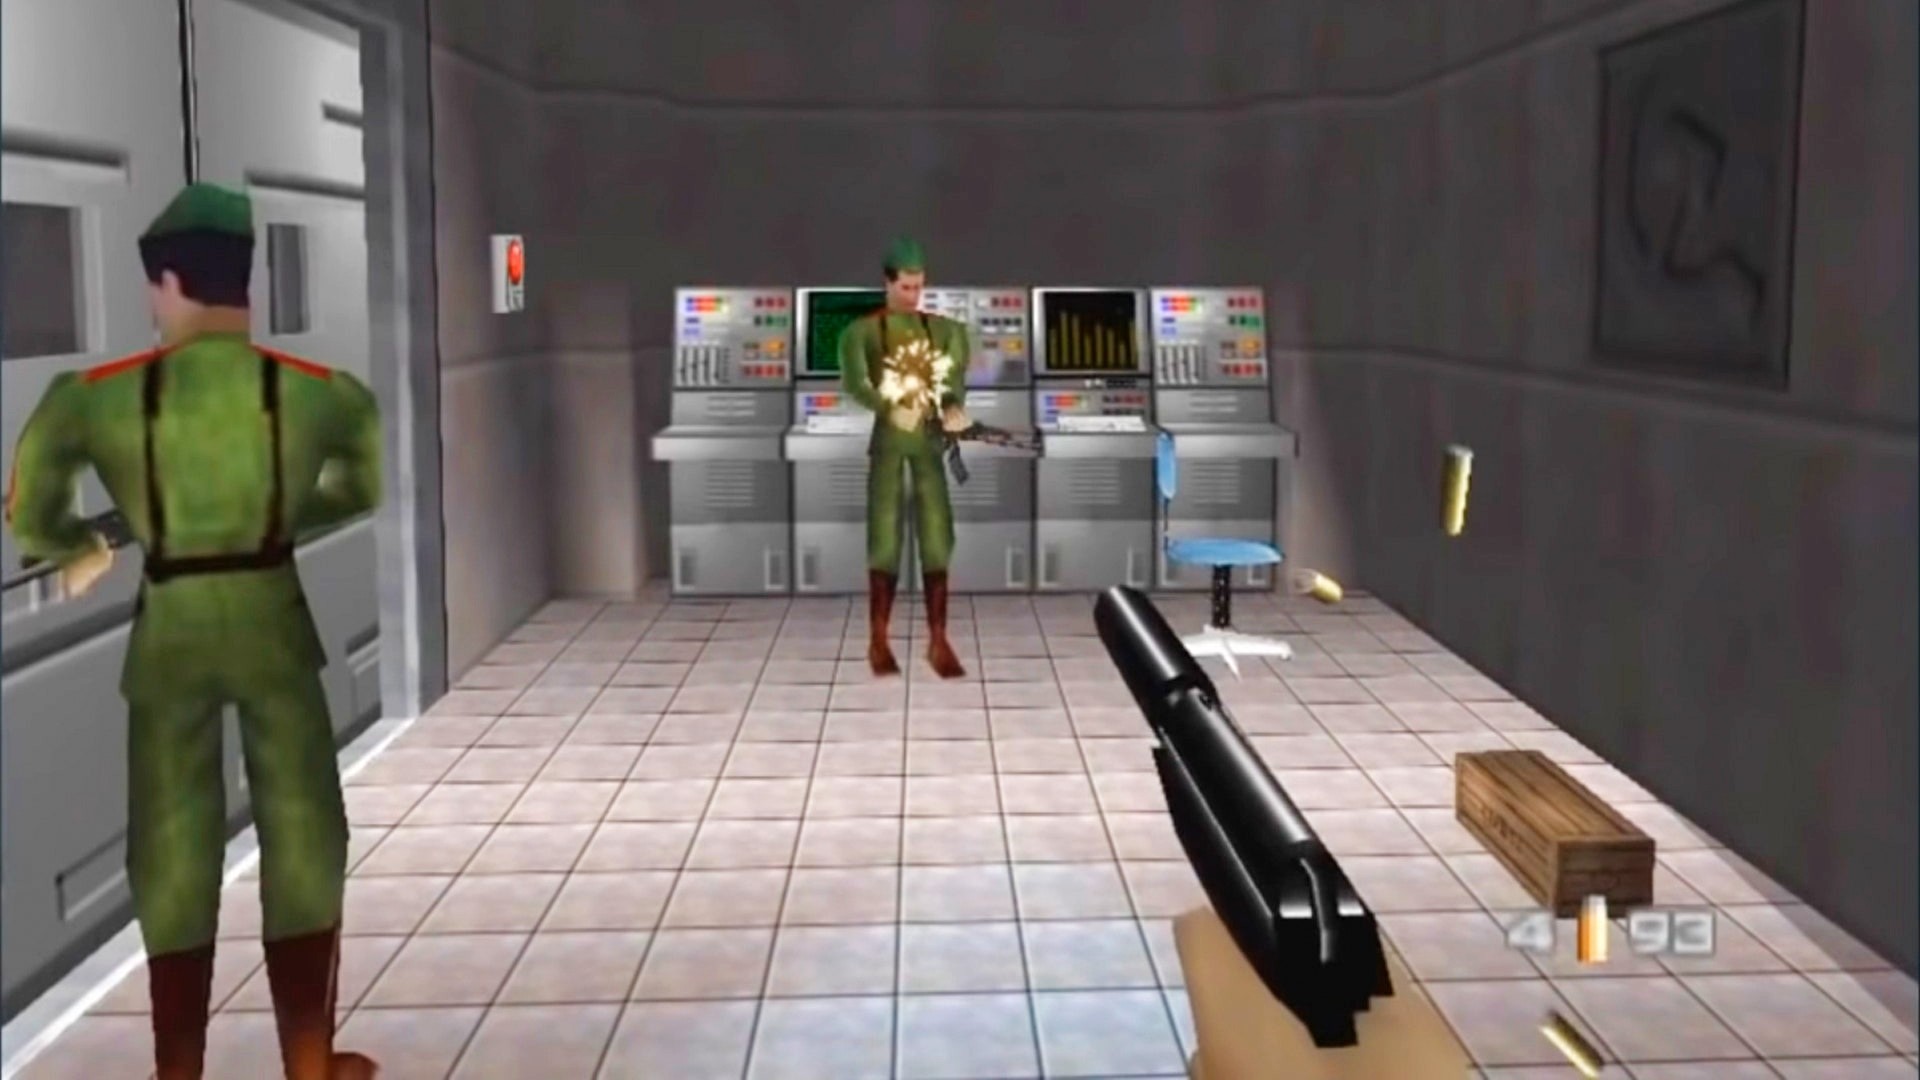 Confira o REMAKE de 007 GoldenEye do Nintendo 64 